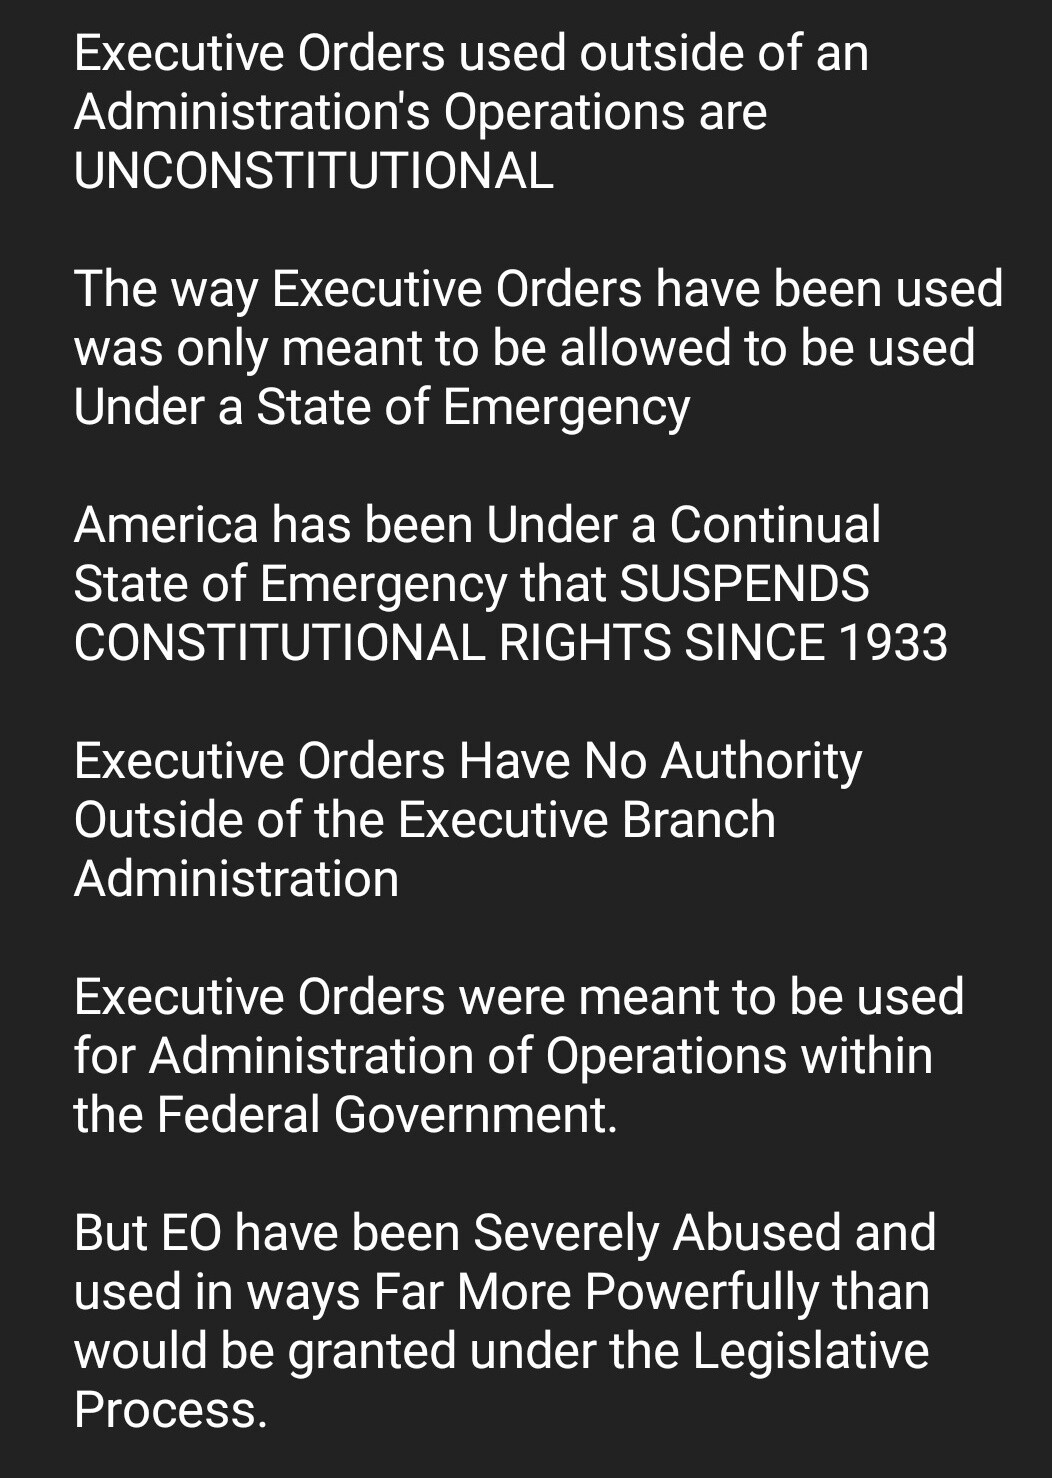 EXECUTIVE ORDERS-Laws Governing EO's Bfa6d09cade02fb1